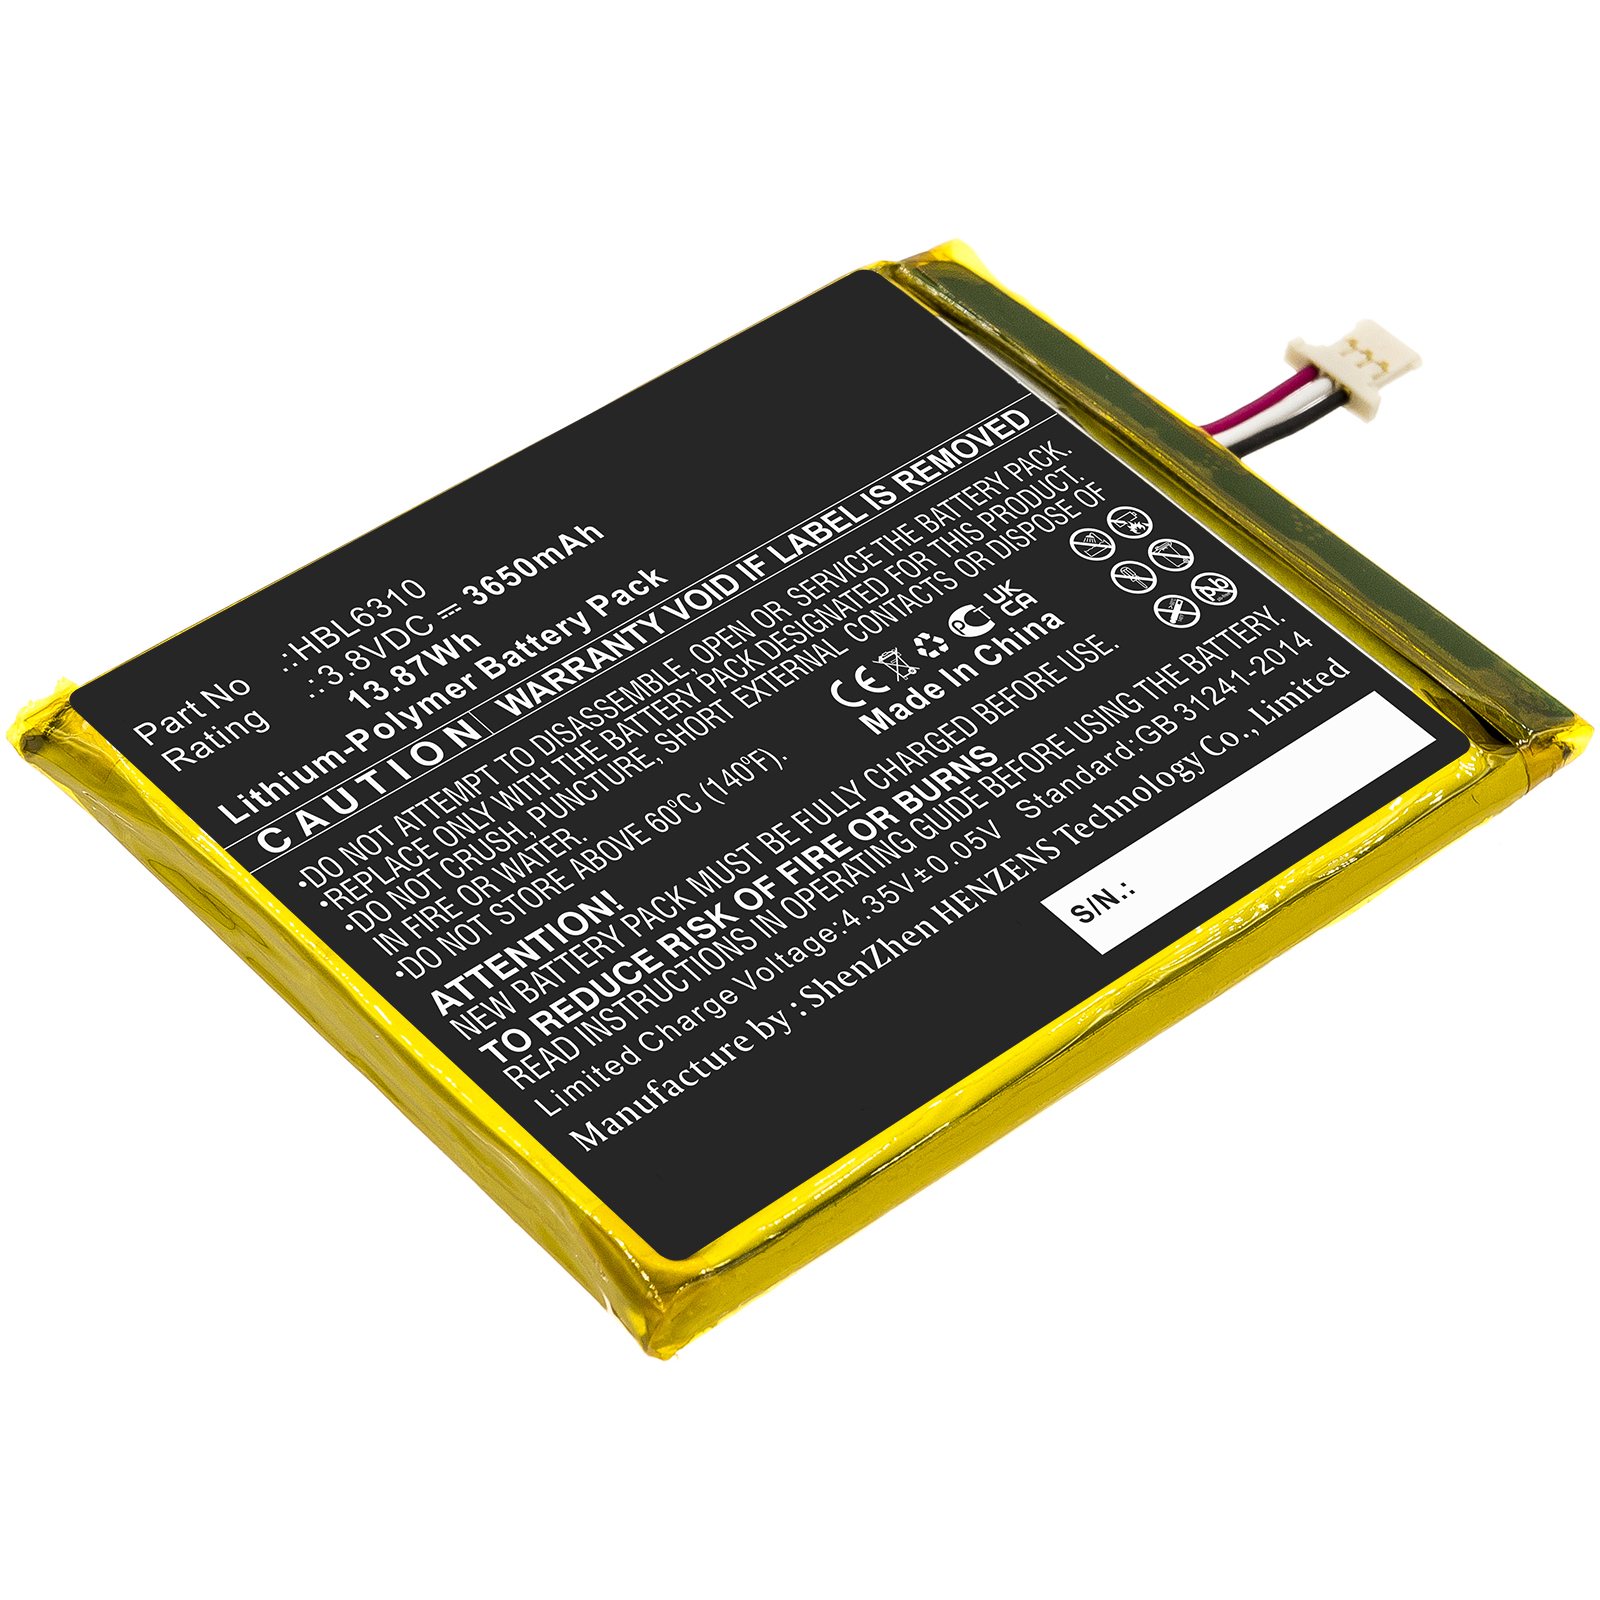 Synergy Digital Barcode Scanner Battery, Compatible with Unitech HBL6310 Barcode Scanner Battery (Li-Pol, 3.8V, 3650mAh)